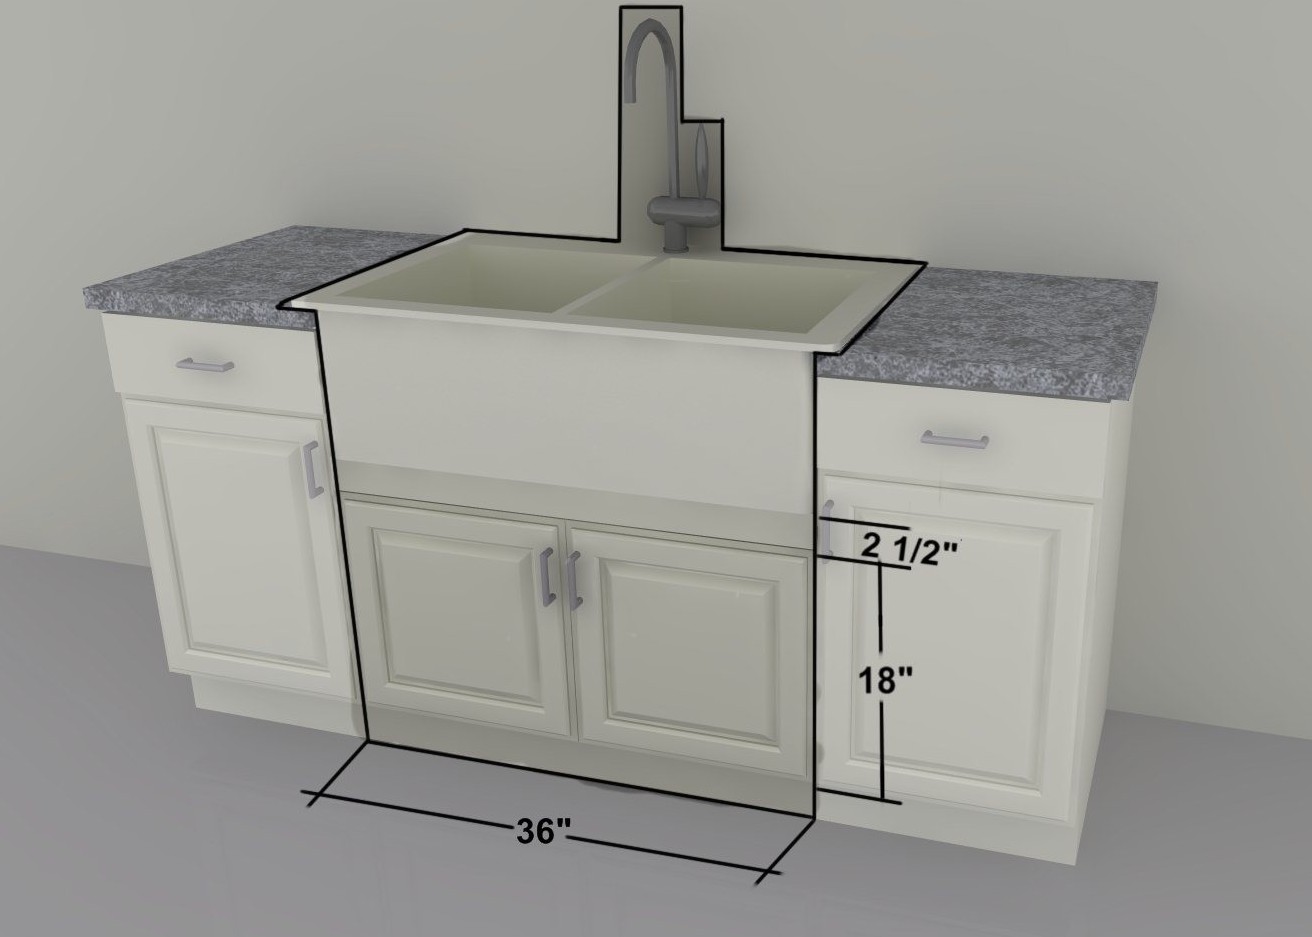 smallest sink kitchen cabinet size